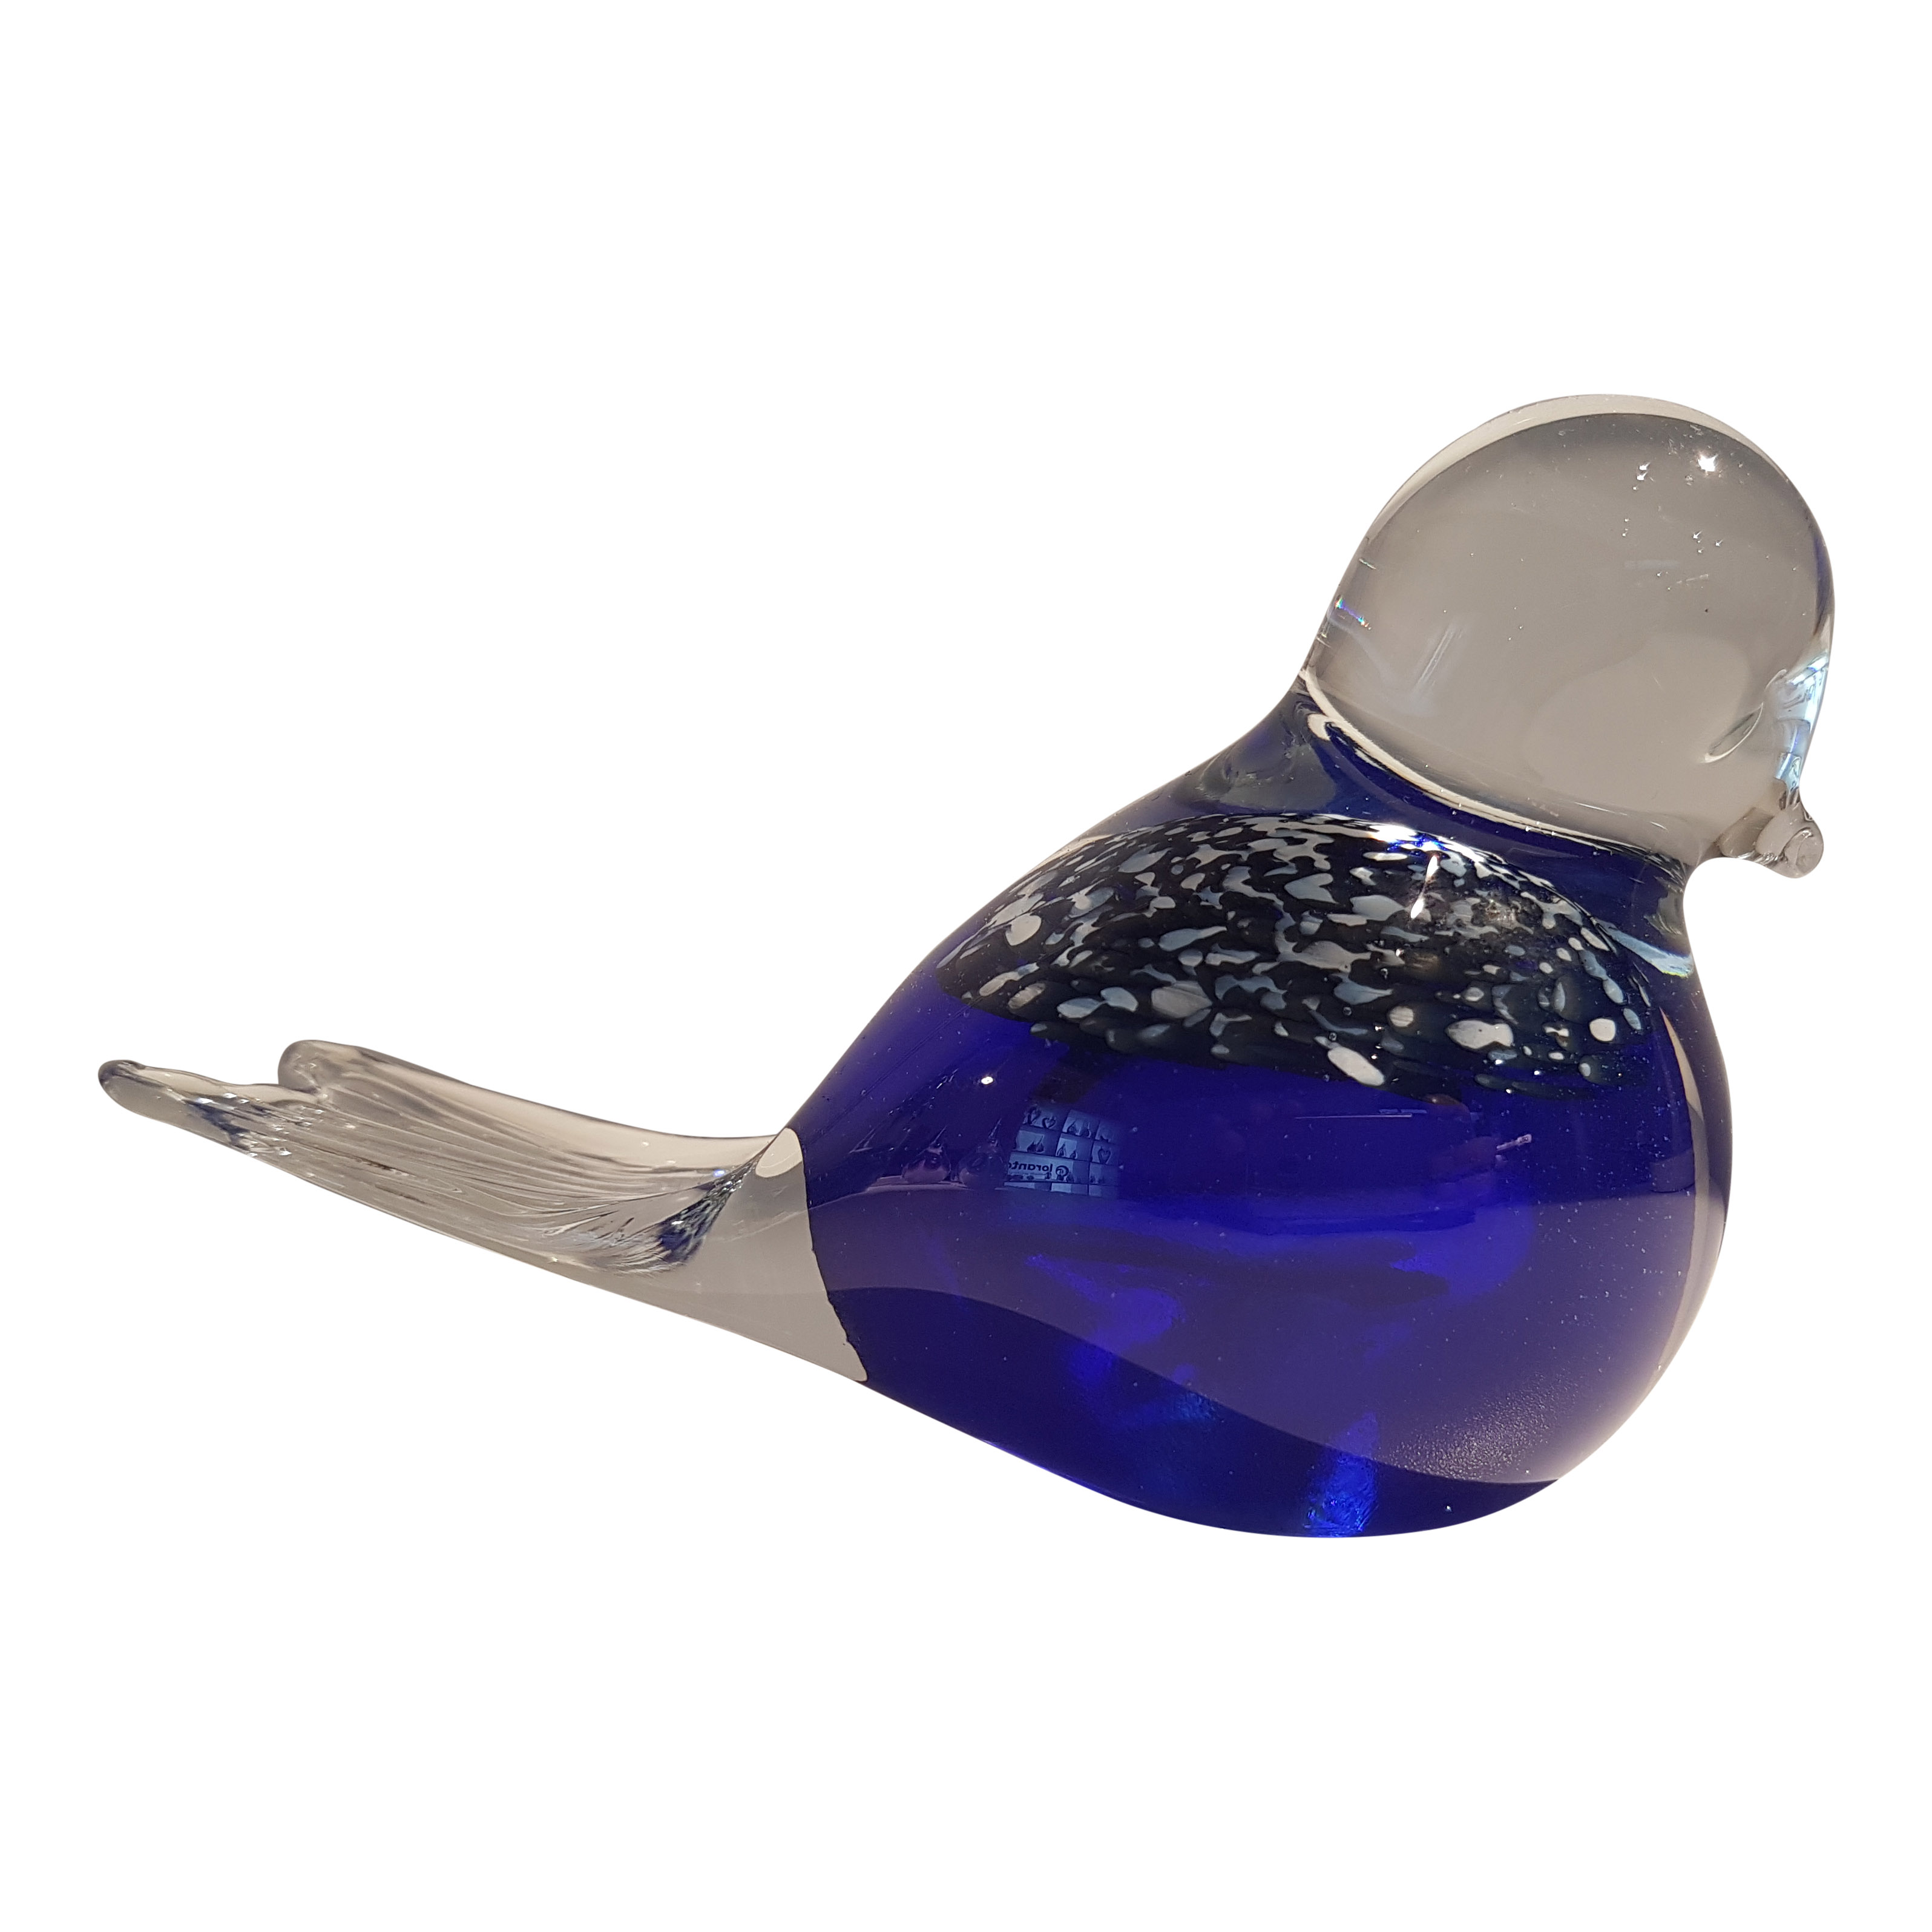 Urn Vogel blauw verendek en askamer voor crematie-as | €58,50